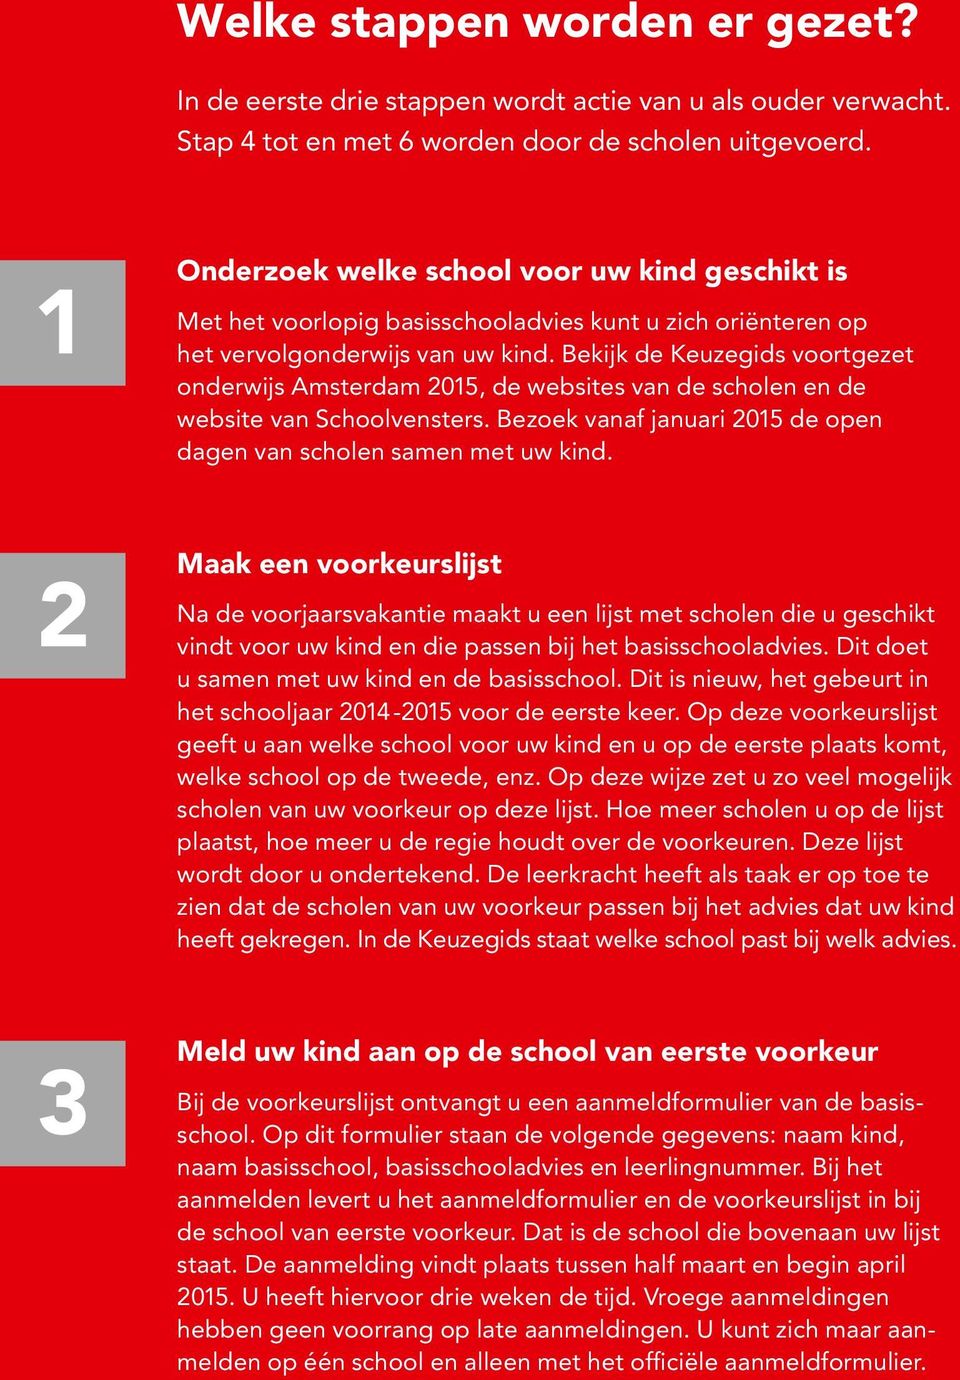 Bekijk de Keuzegids voortgezet onderwijs Amsterdam 2015, de websites van de scholen en de website van Schoolvensters. Bezoek vanaf januari 2015 de open dagen van scholen samen met uw kind.